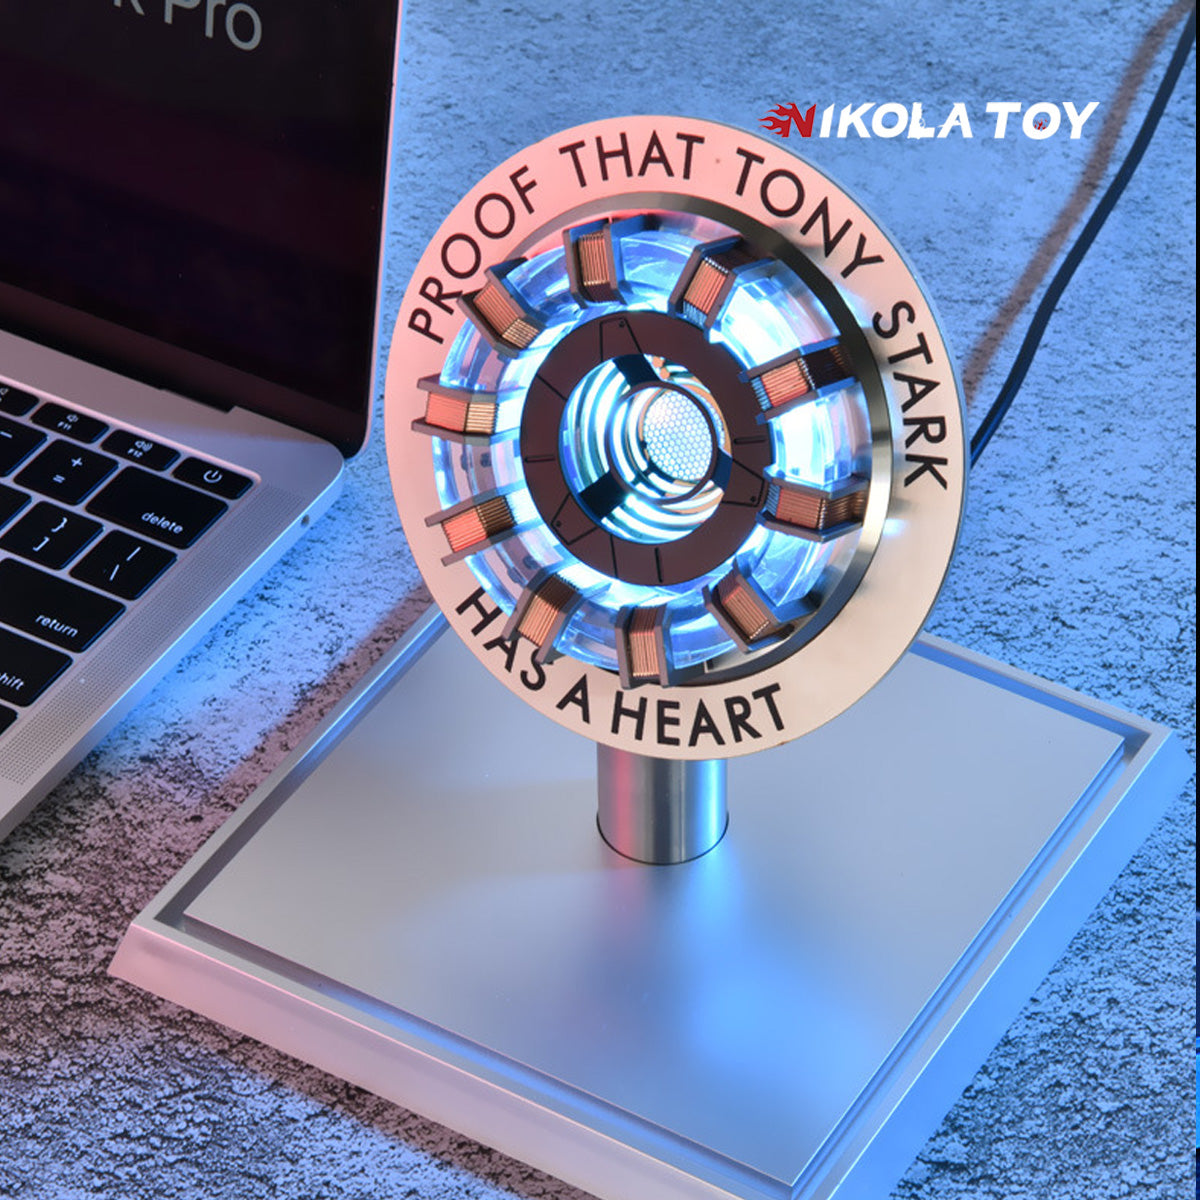 Iron Man Heart Reactor - Nikola Toy